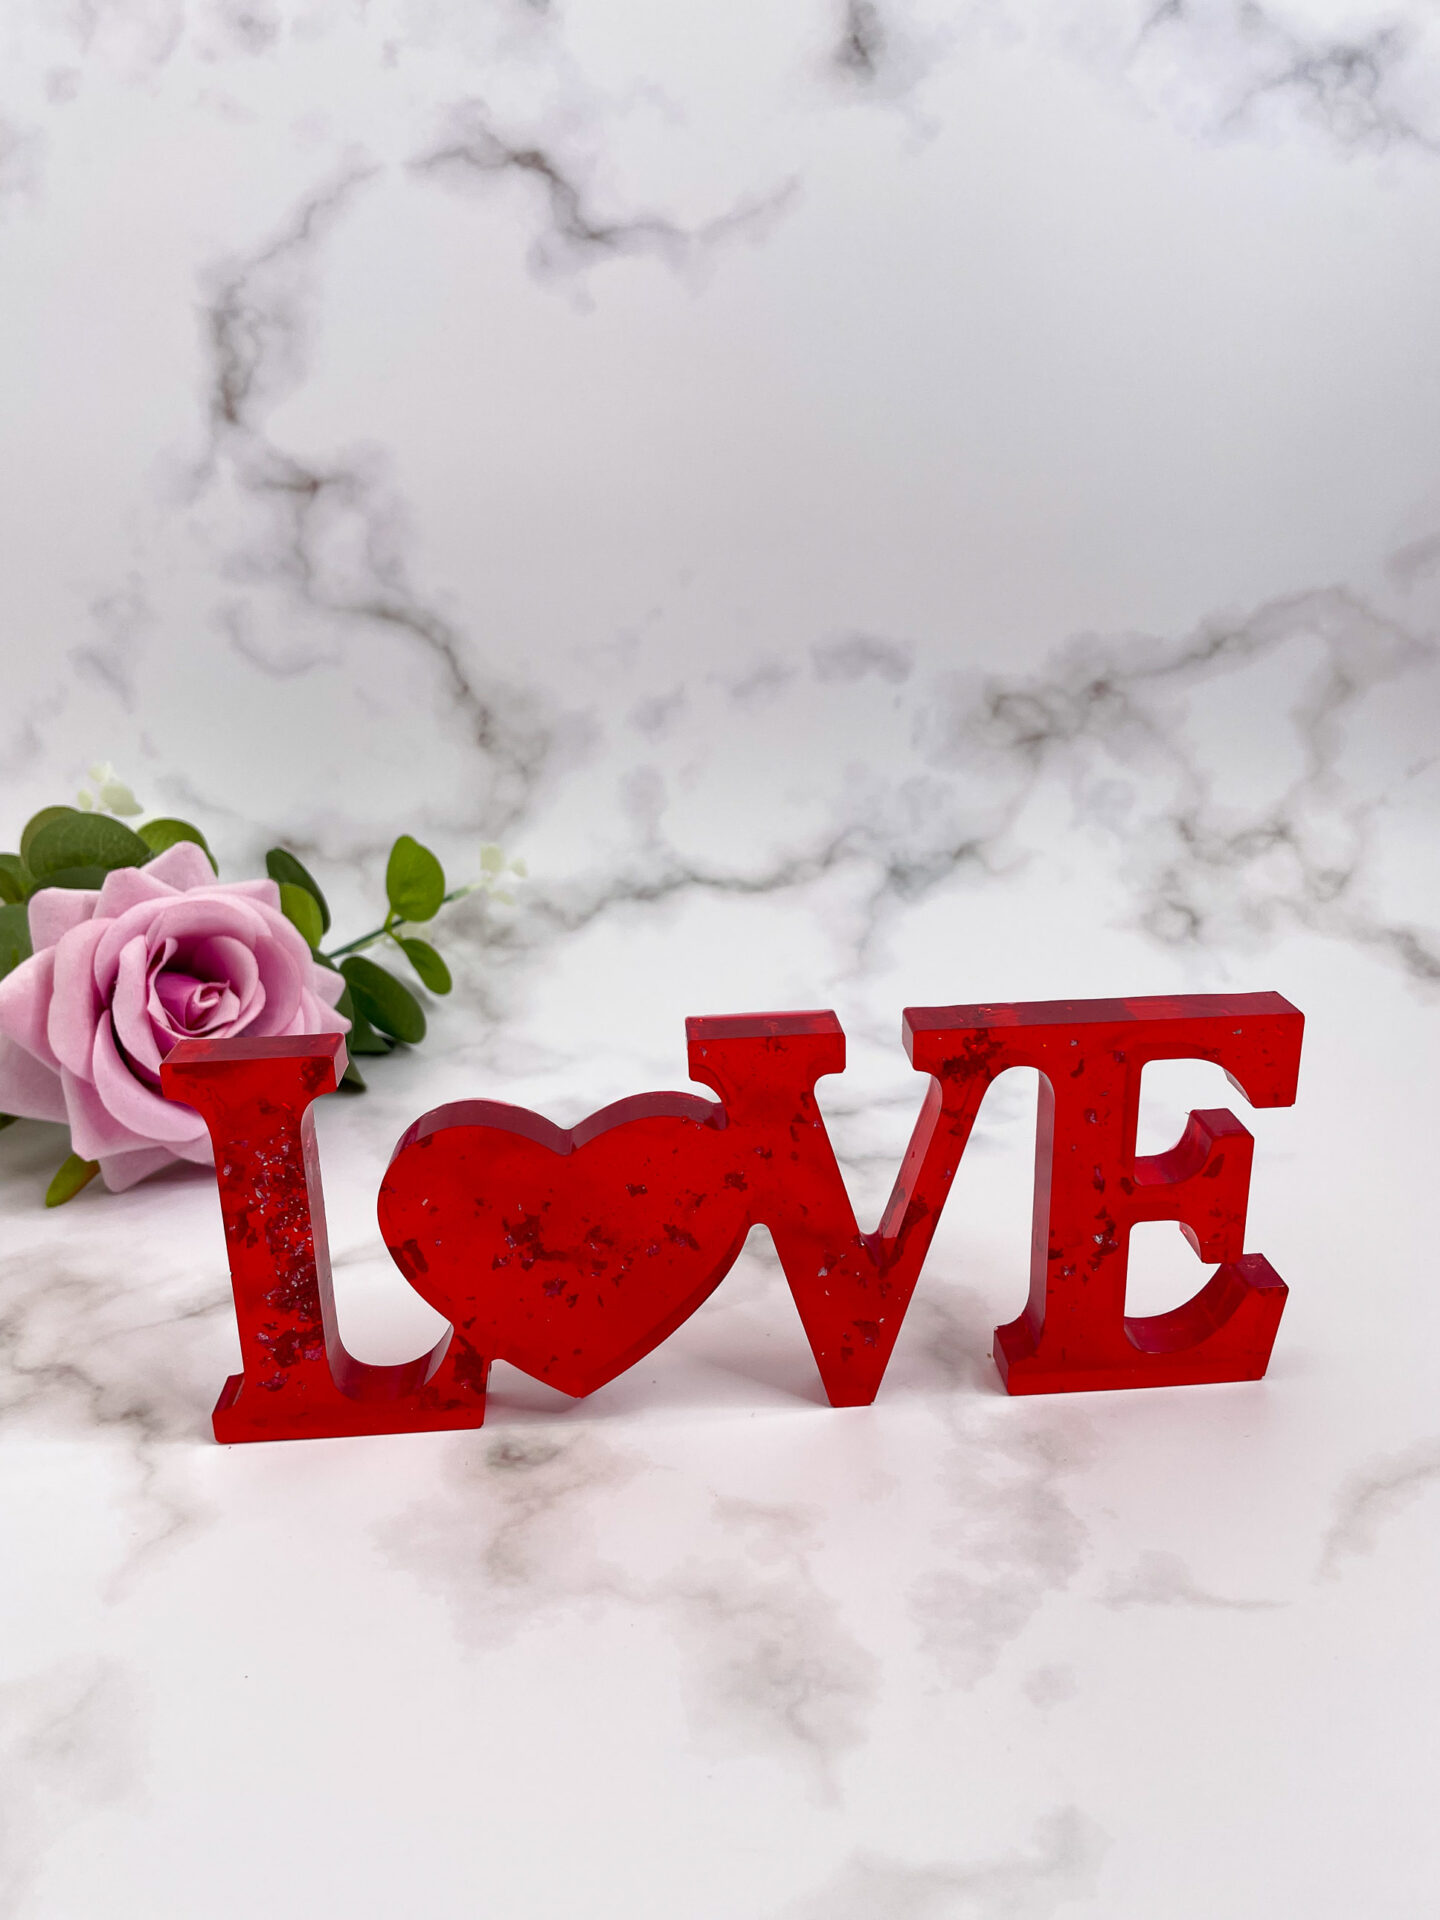 Mot décoratifs en résine - Love - rouge - idées cadeaux pour la saint valentin - boutique idées cadeaux - boutique en ligne - création française et artisanale.